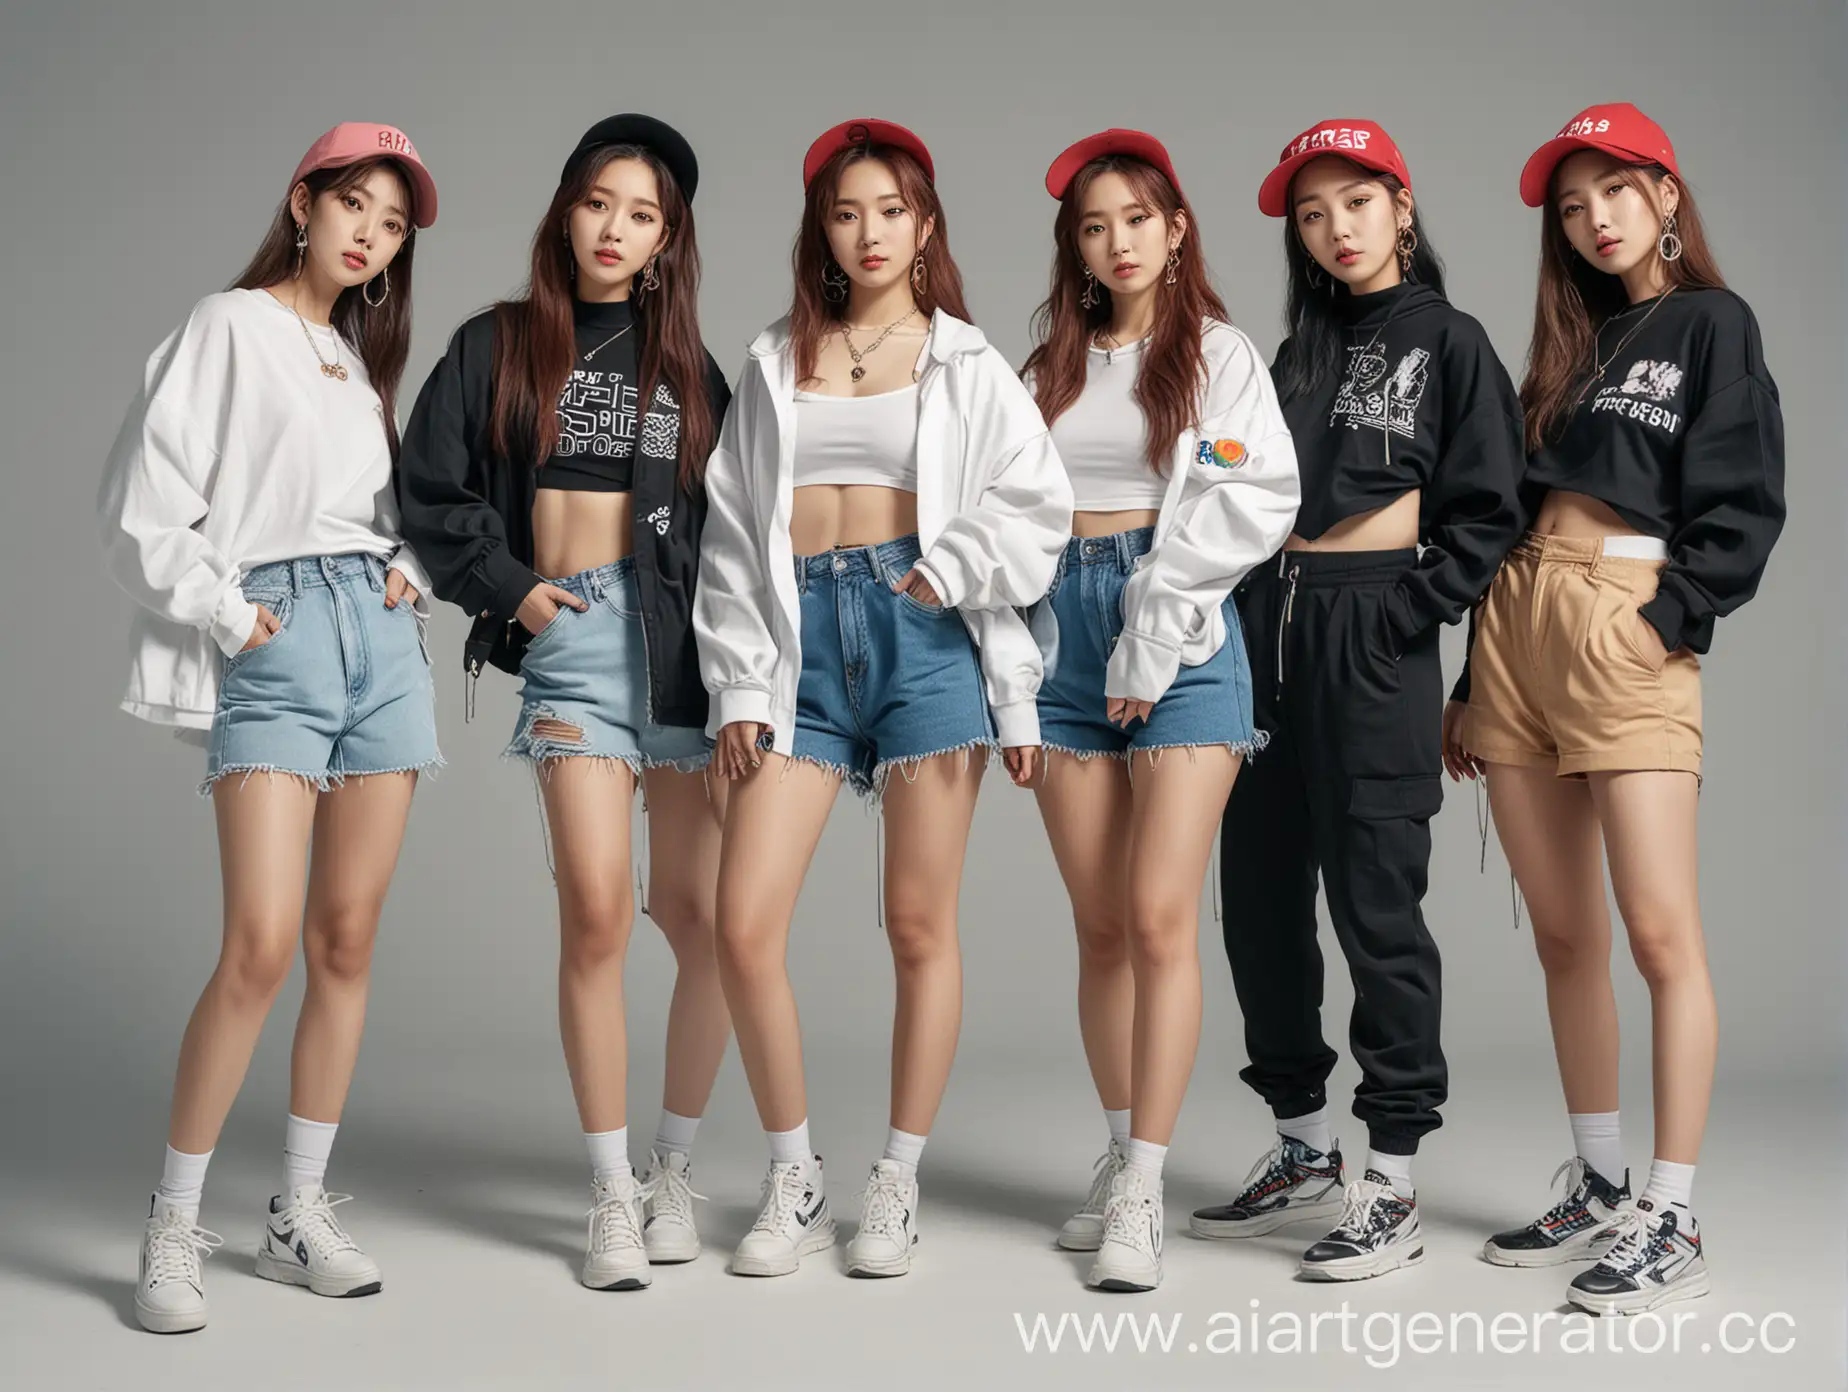 6 девушек корейской внешности в стиле k-pop, одеты в стиле hip-hop в полный рост